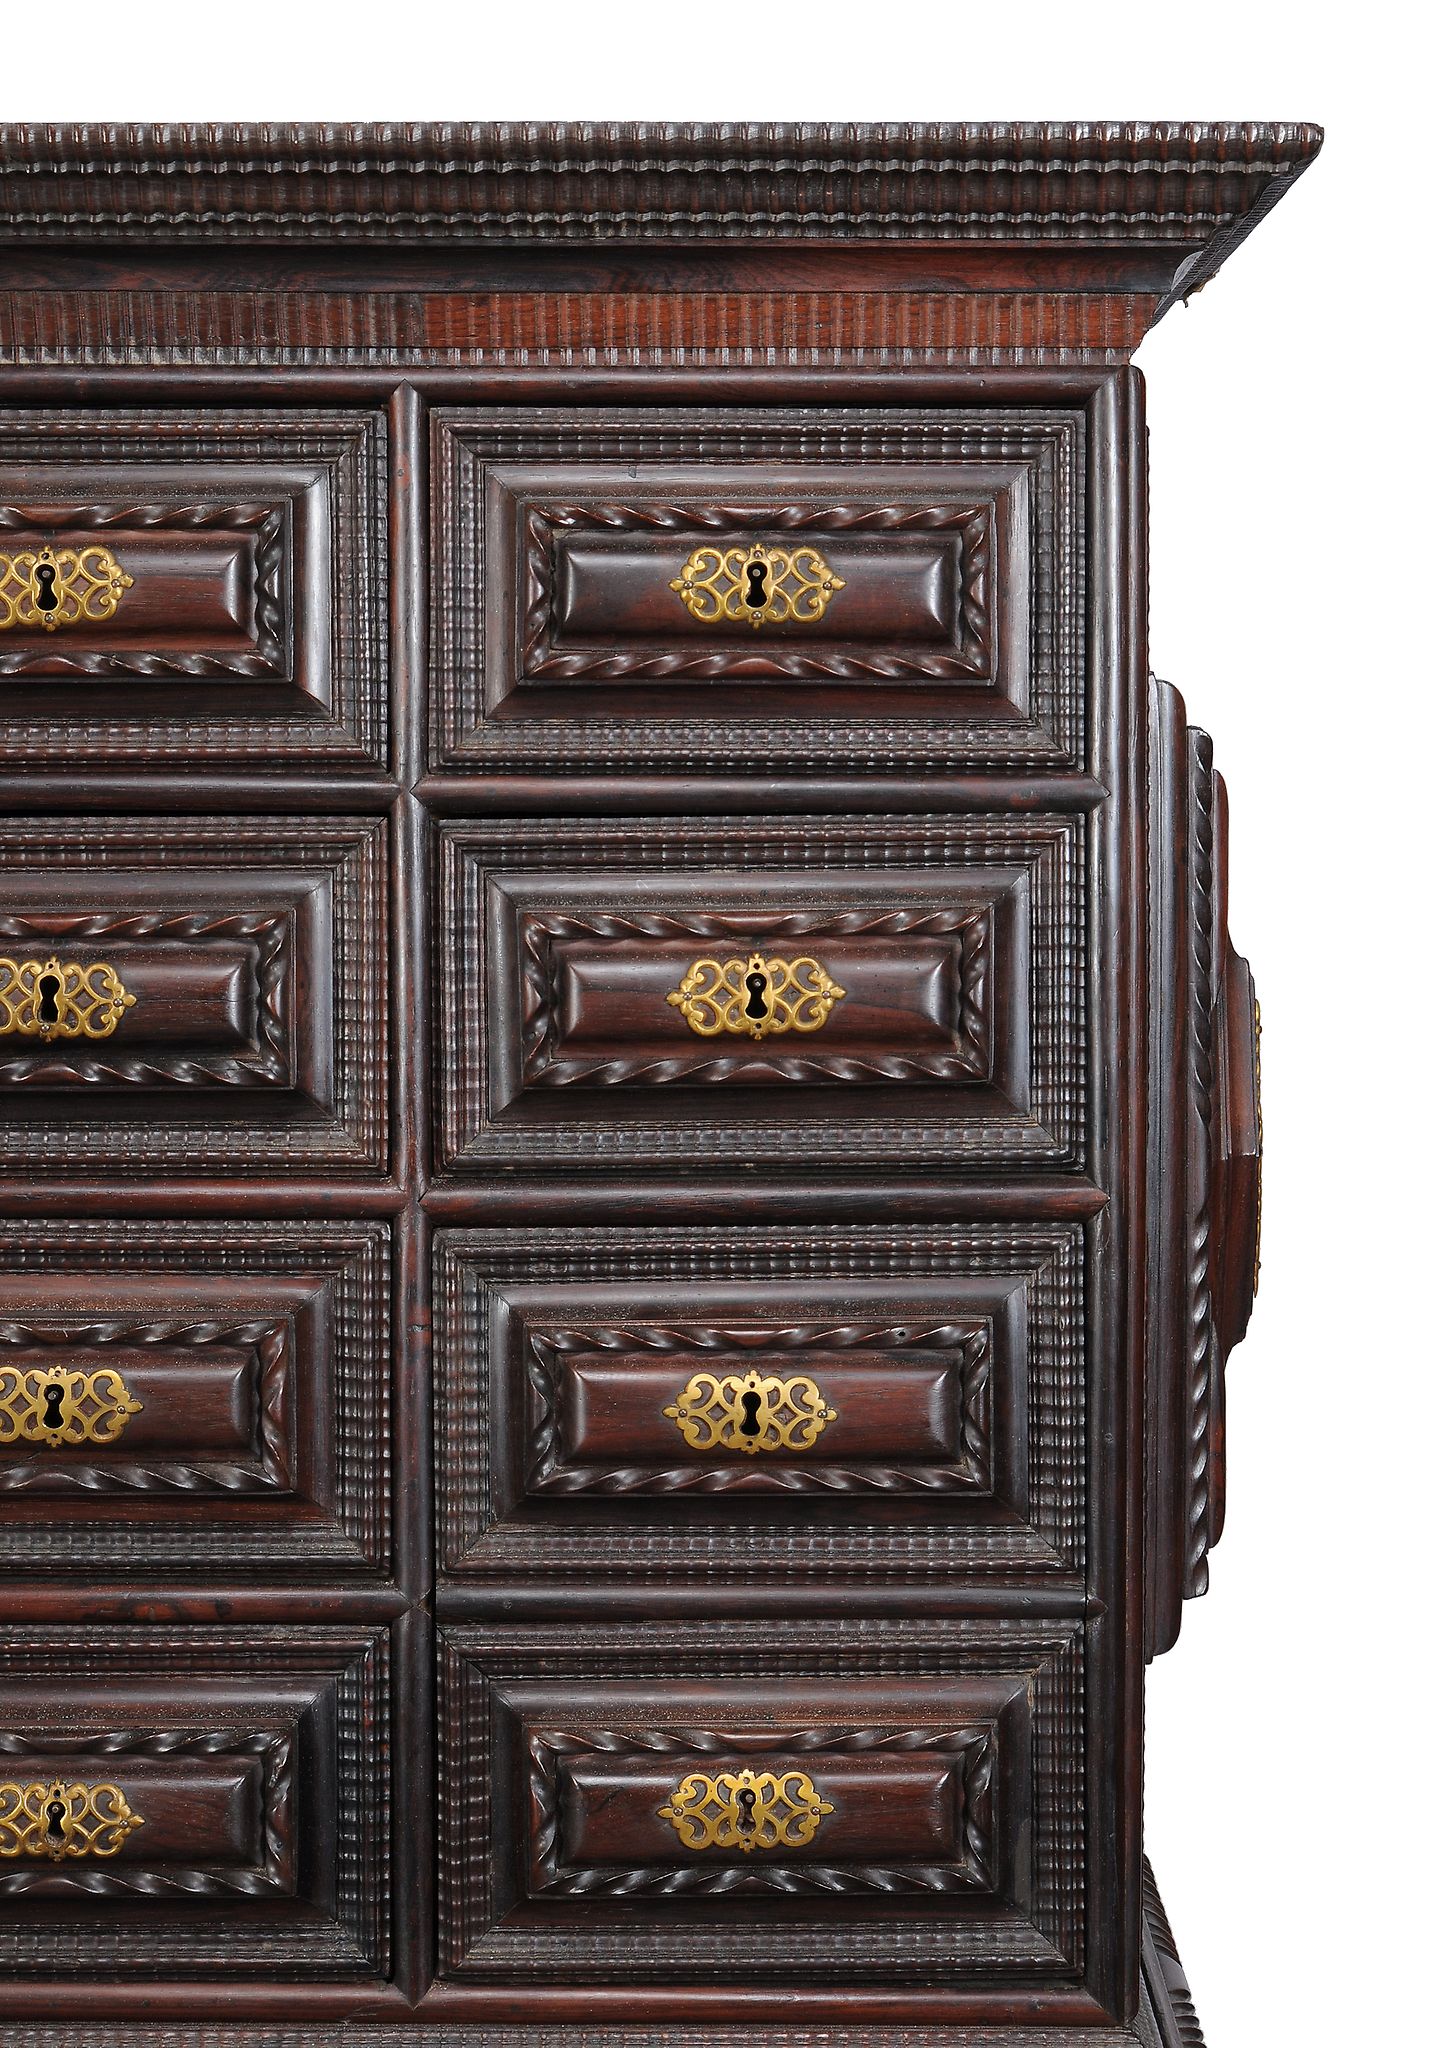 Ω A Portuguese rosewood and gilt metal mounted cabinet on stand, mid 18th century, decorated with - Image 3 of 3